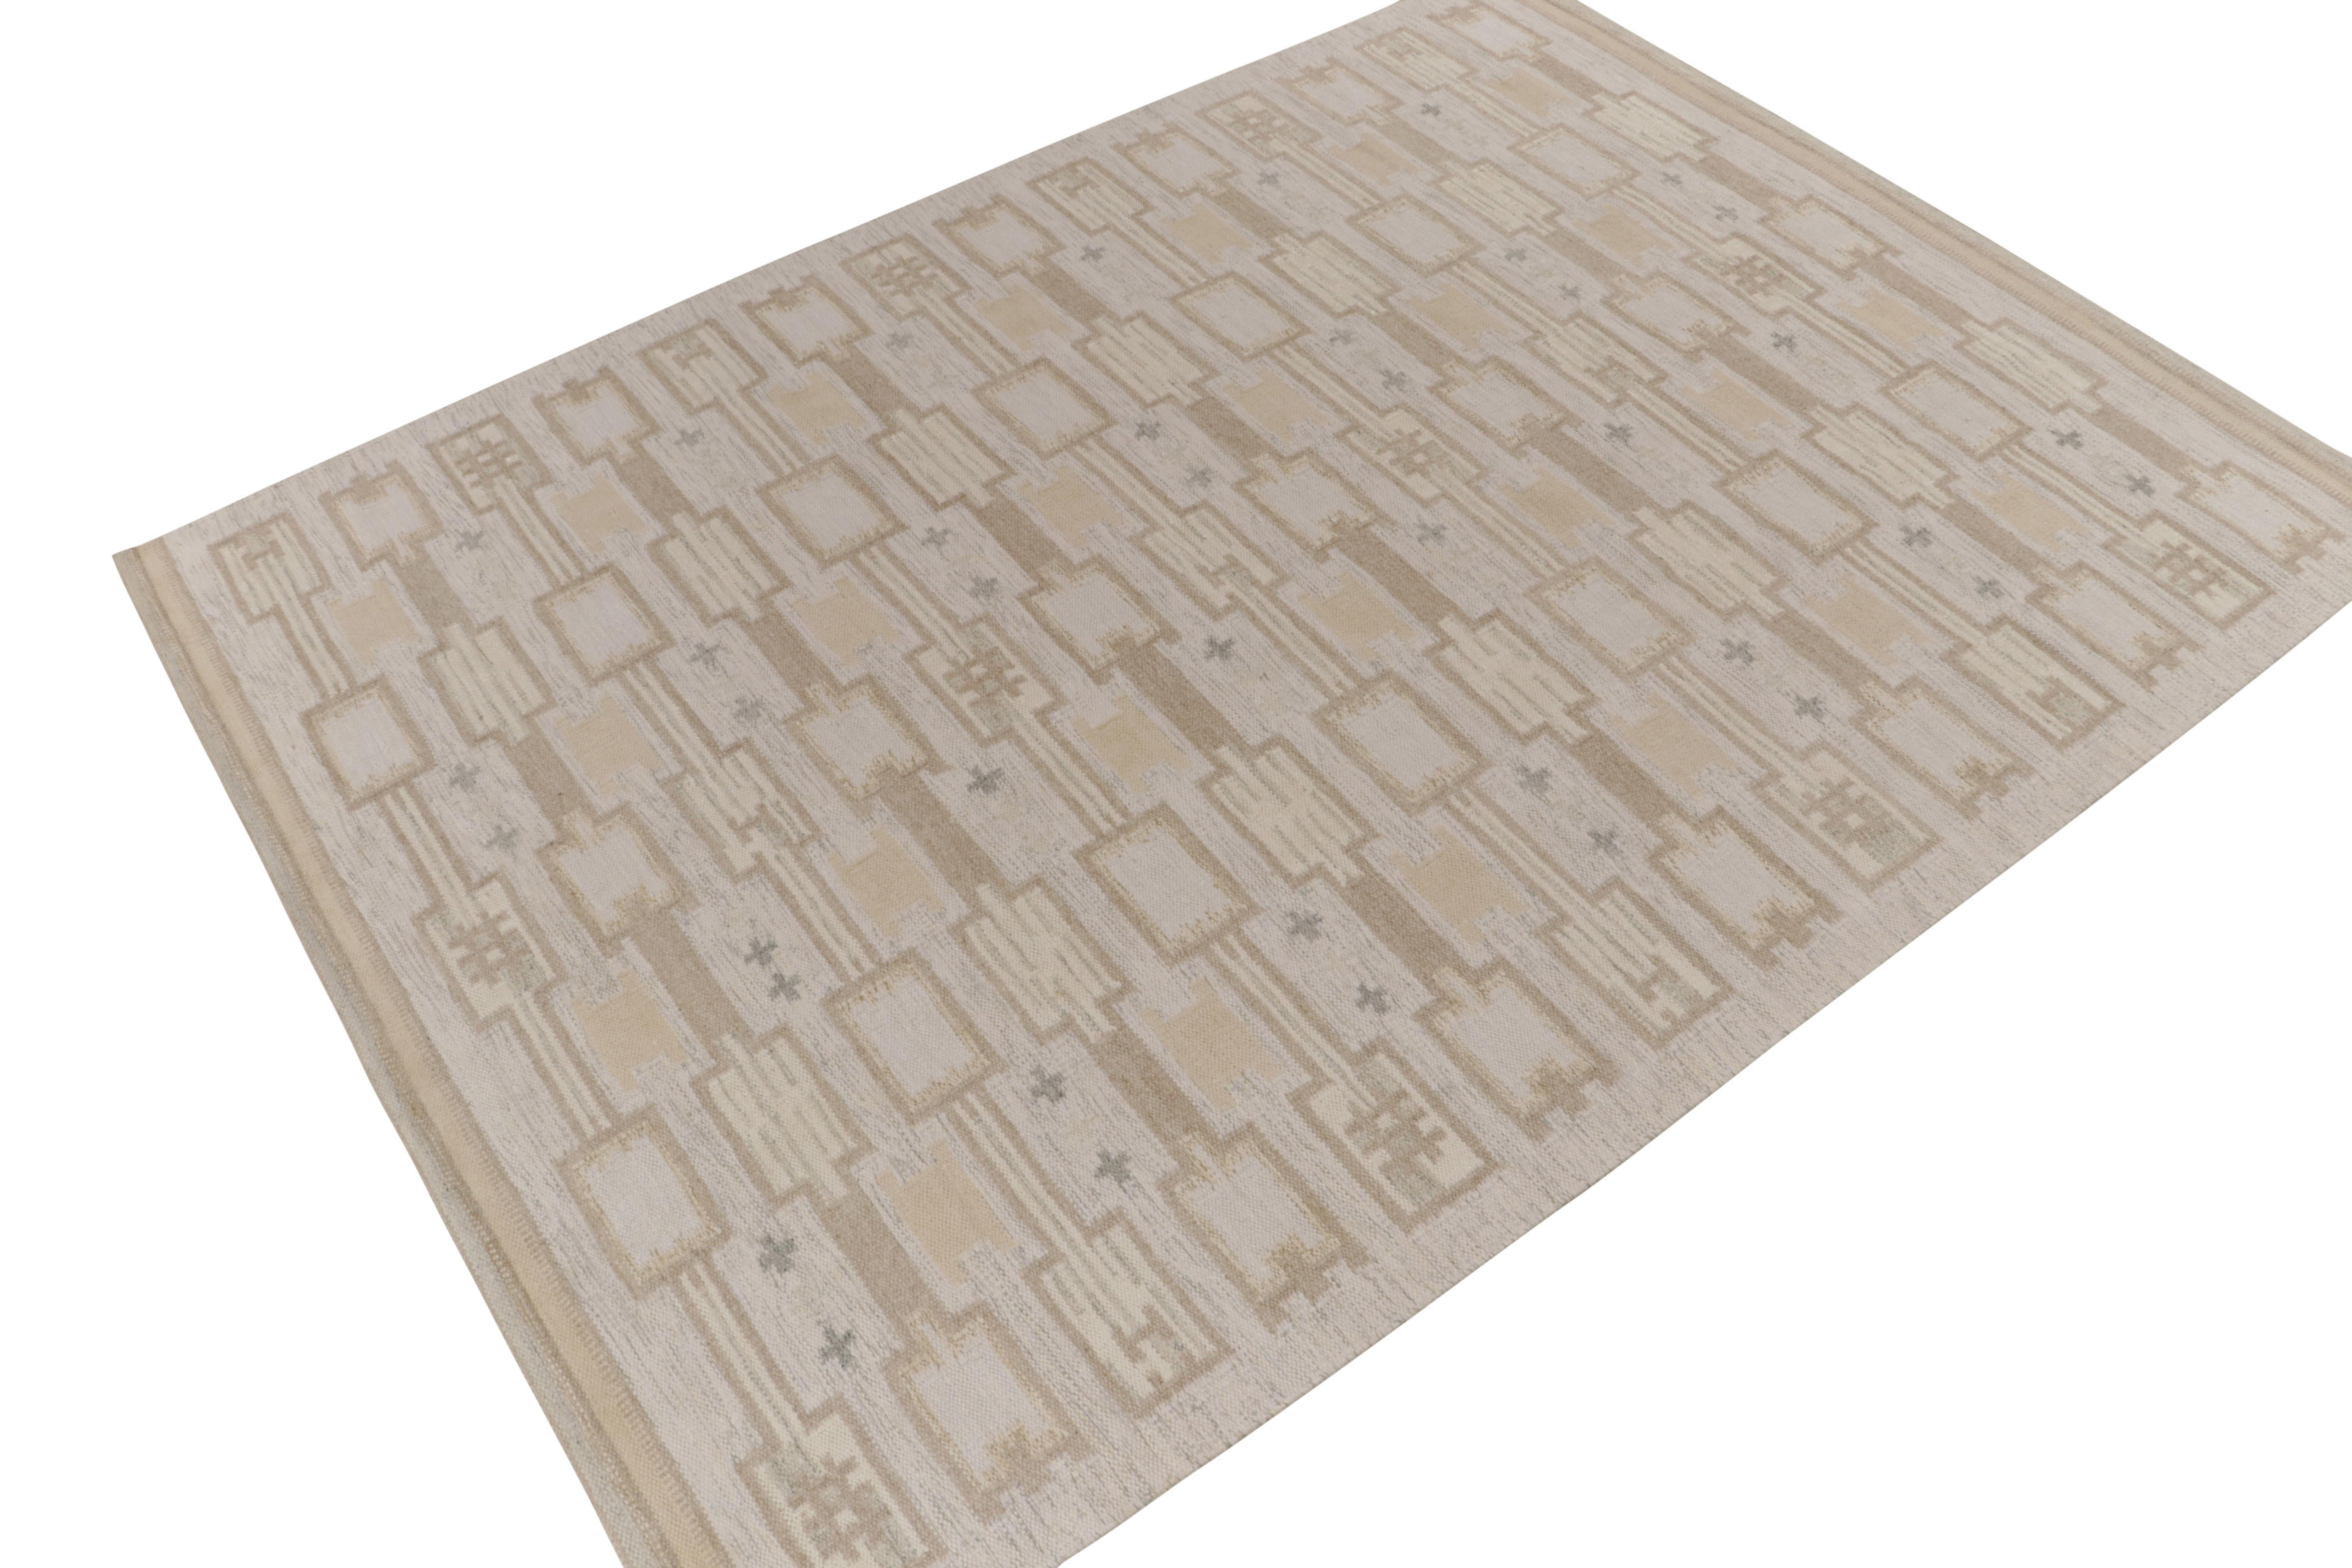 Un élégant tissage plat de la collection Kilim scandinave primée de Rug & Kilim. 

Sur le design : Illustré à l'échelle 9x12, ce kilim possède une sensibilité texturale exemplaire qui s'intègre parfaitement au motif géométrique uniforme dans des